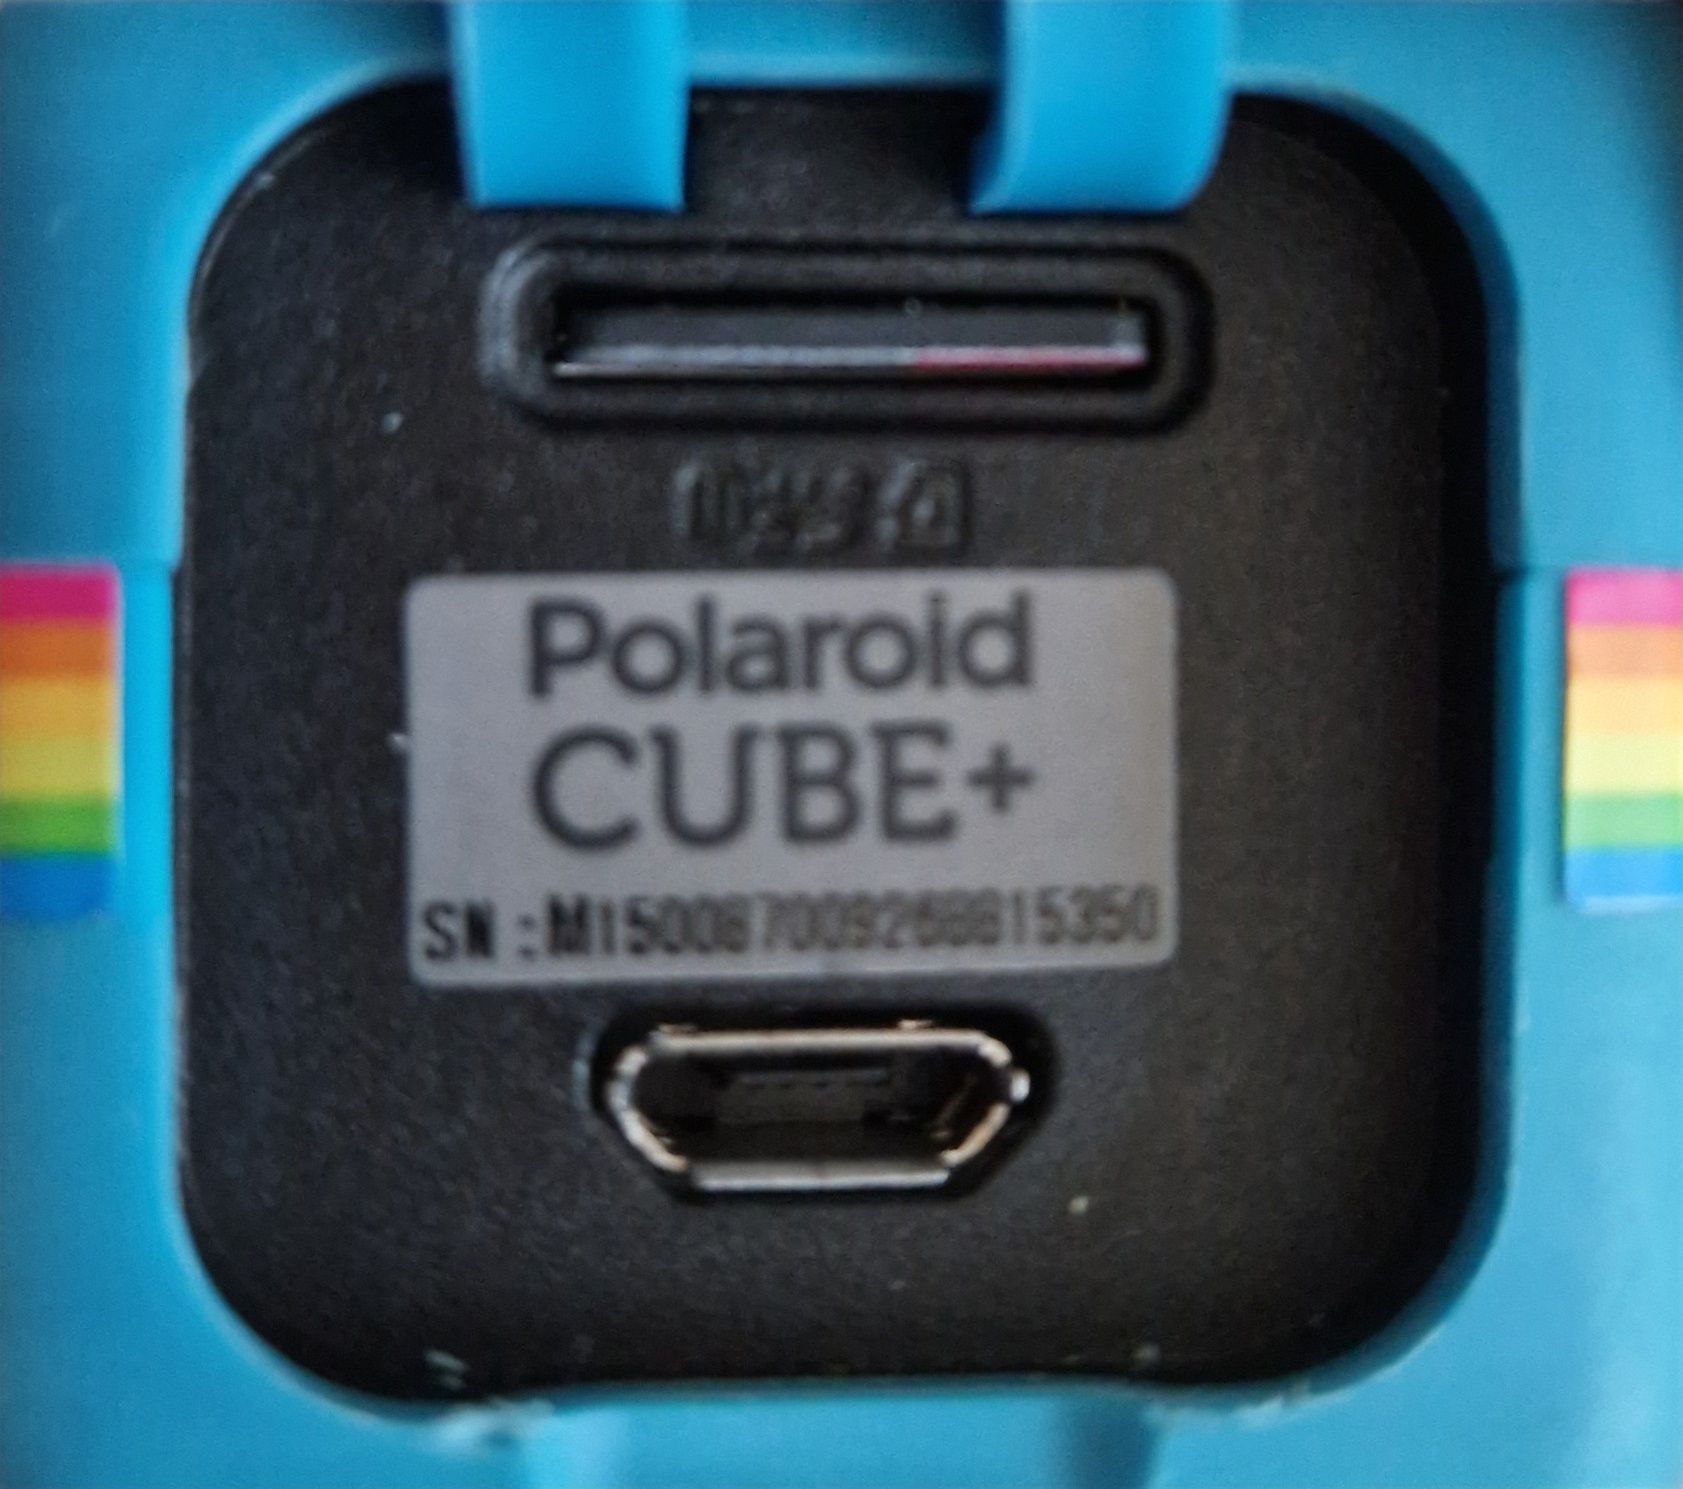 Camera Polaroid Cube+